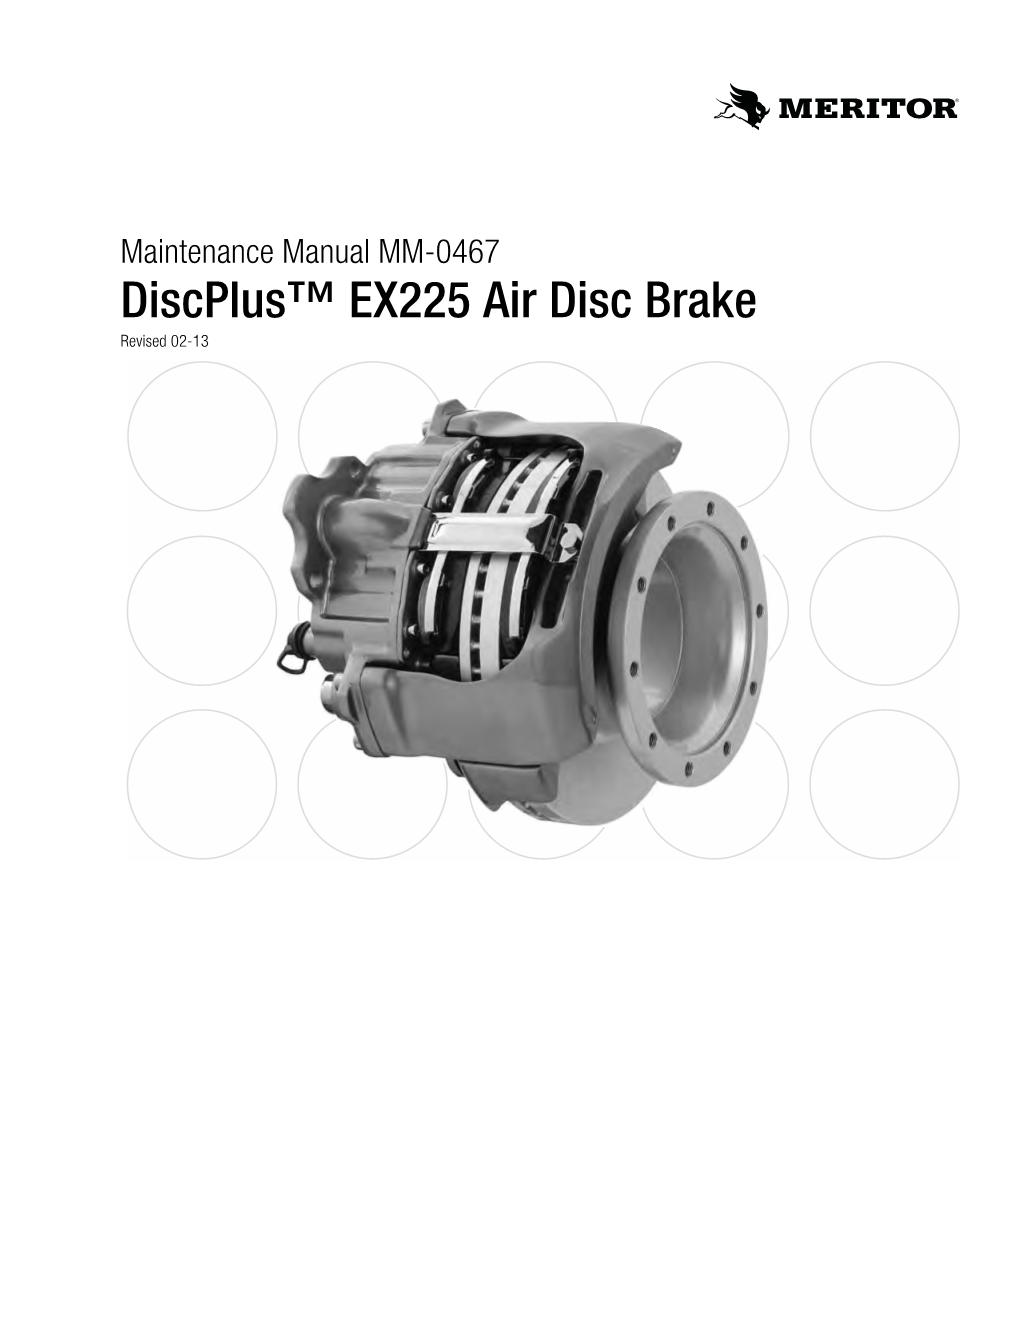 Discplus™ EX225 Air Disc Brake Revised 02-13 Service Notes